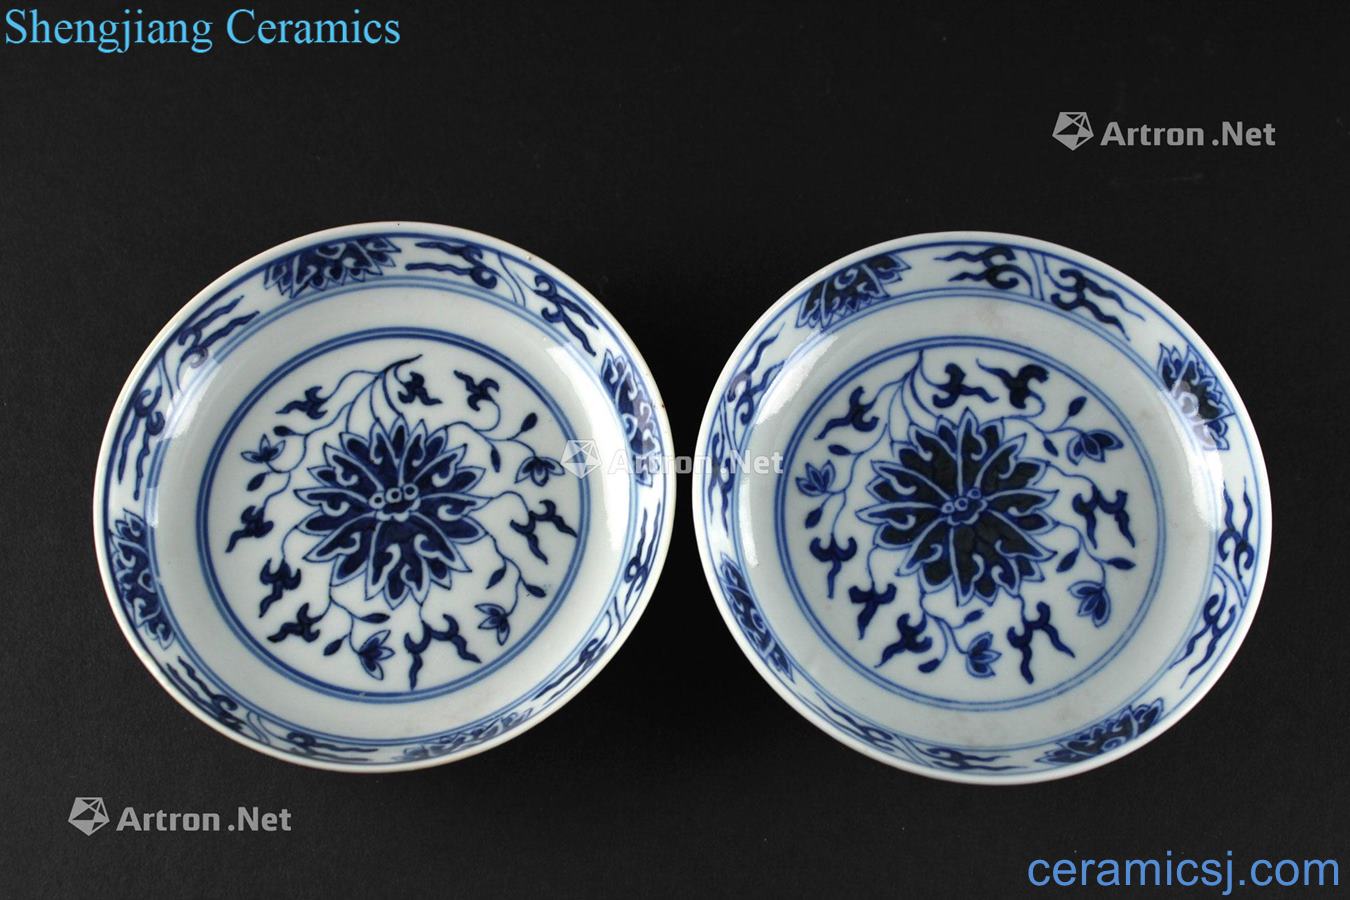 Qing guangxu Kiln porcelain's lotus pattern plate (a)